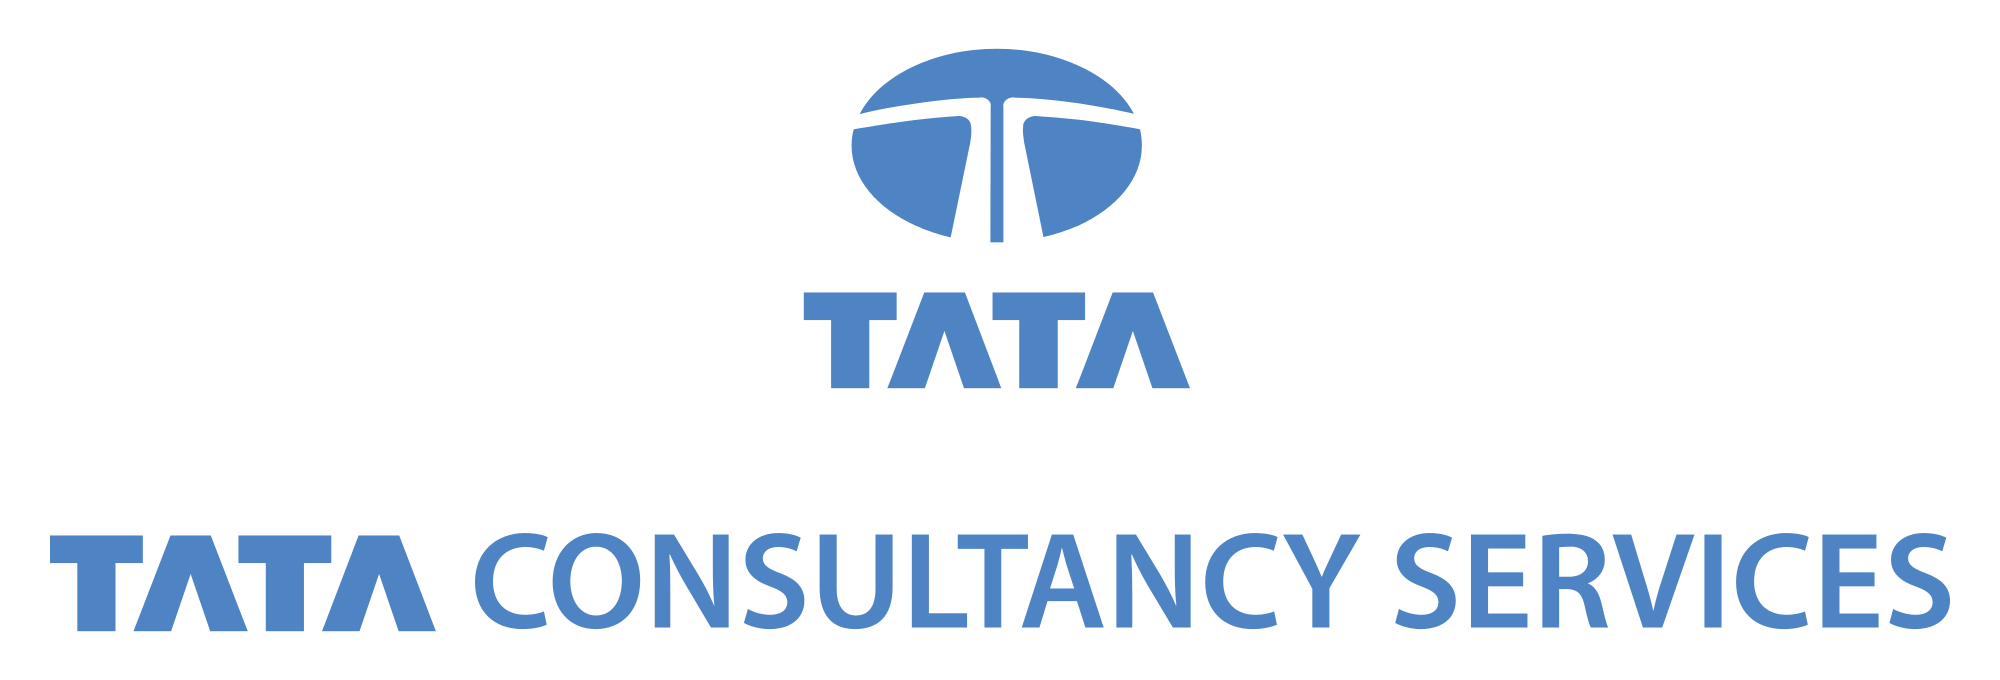 Tata Consultancy Services Logo - File:TATA Consultancy Services Logo blue.svg - Wikimedia Commons